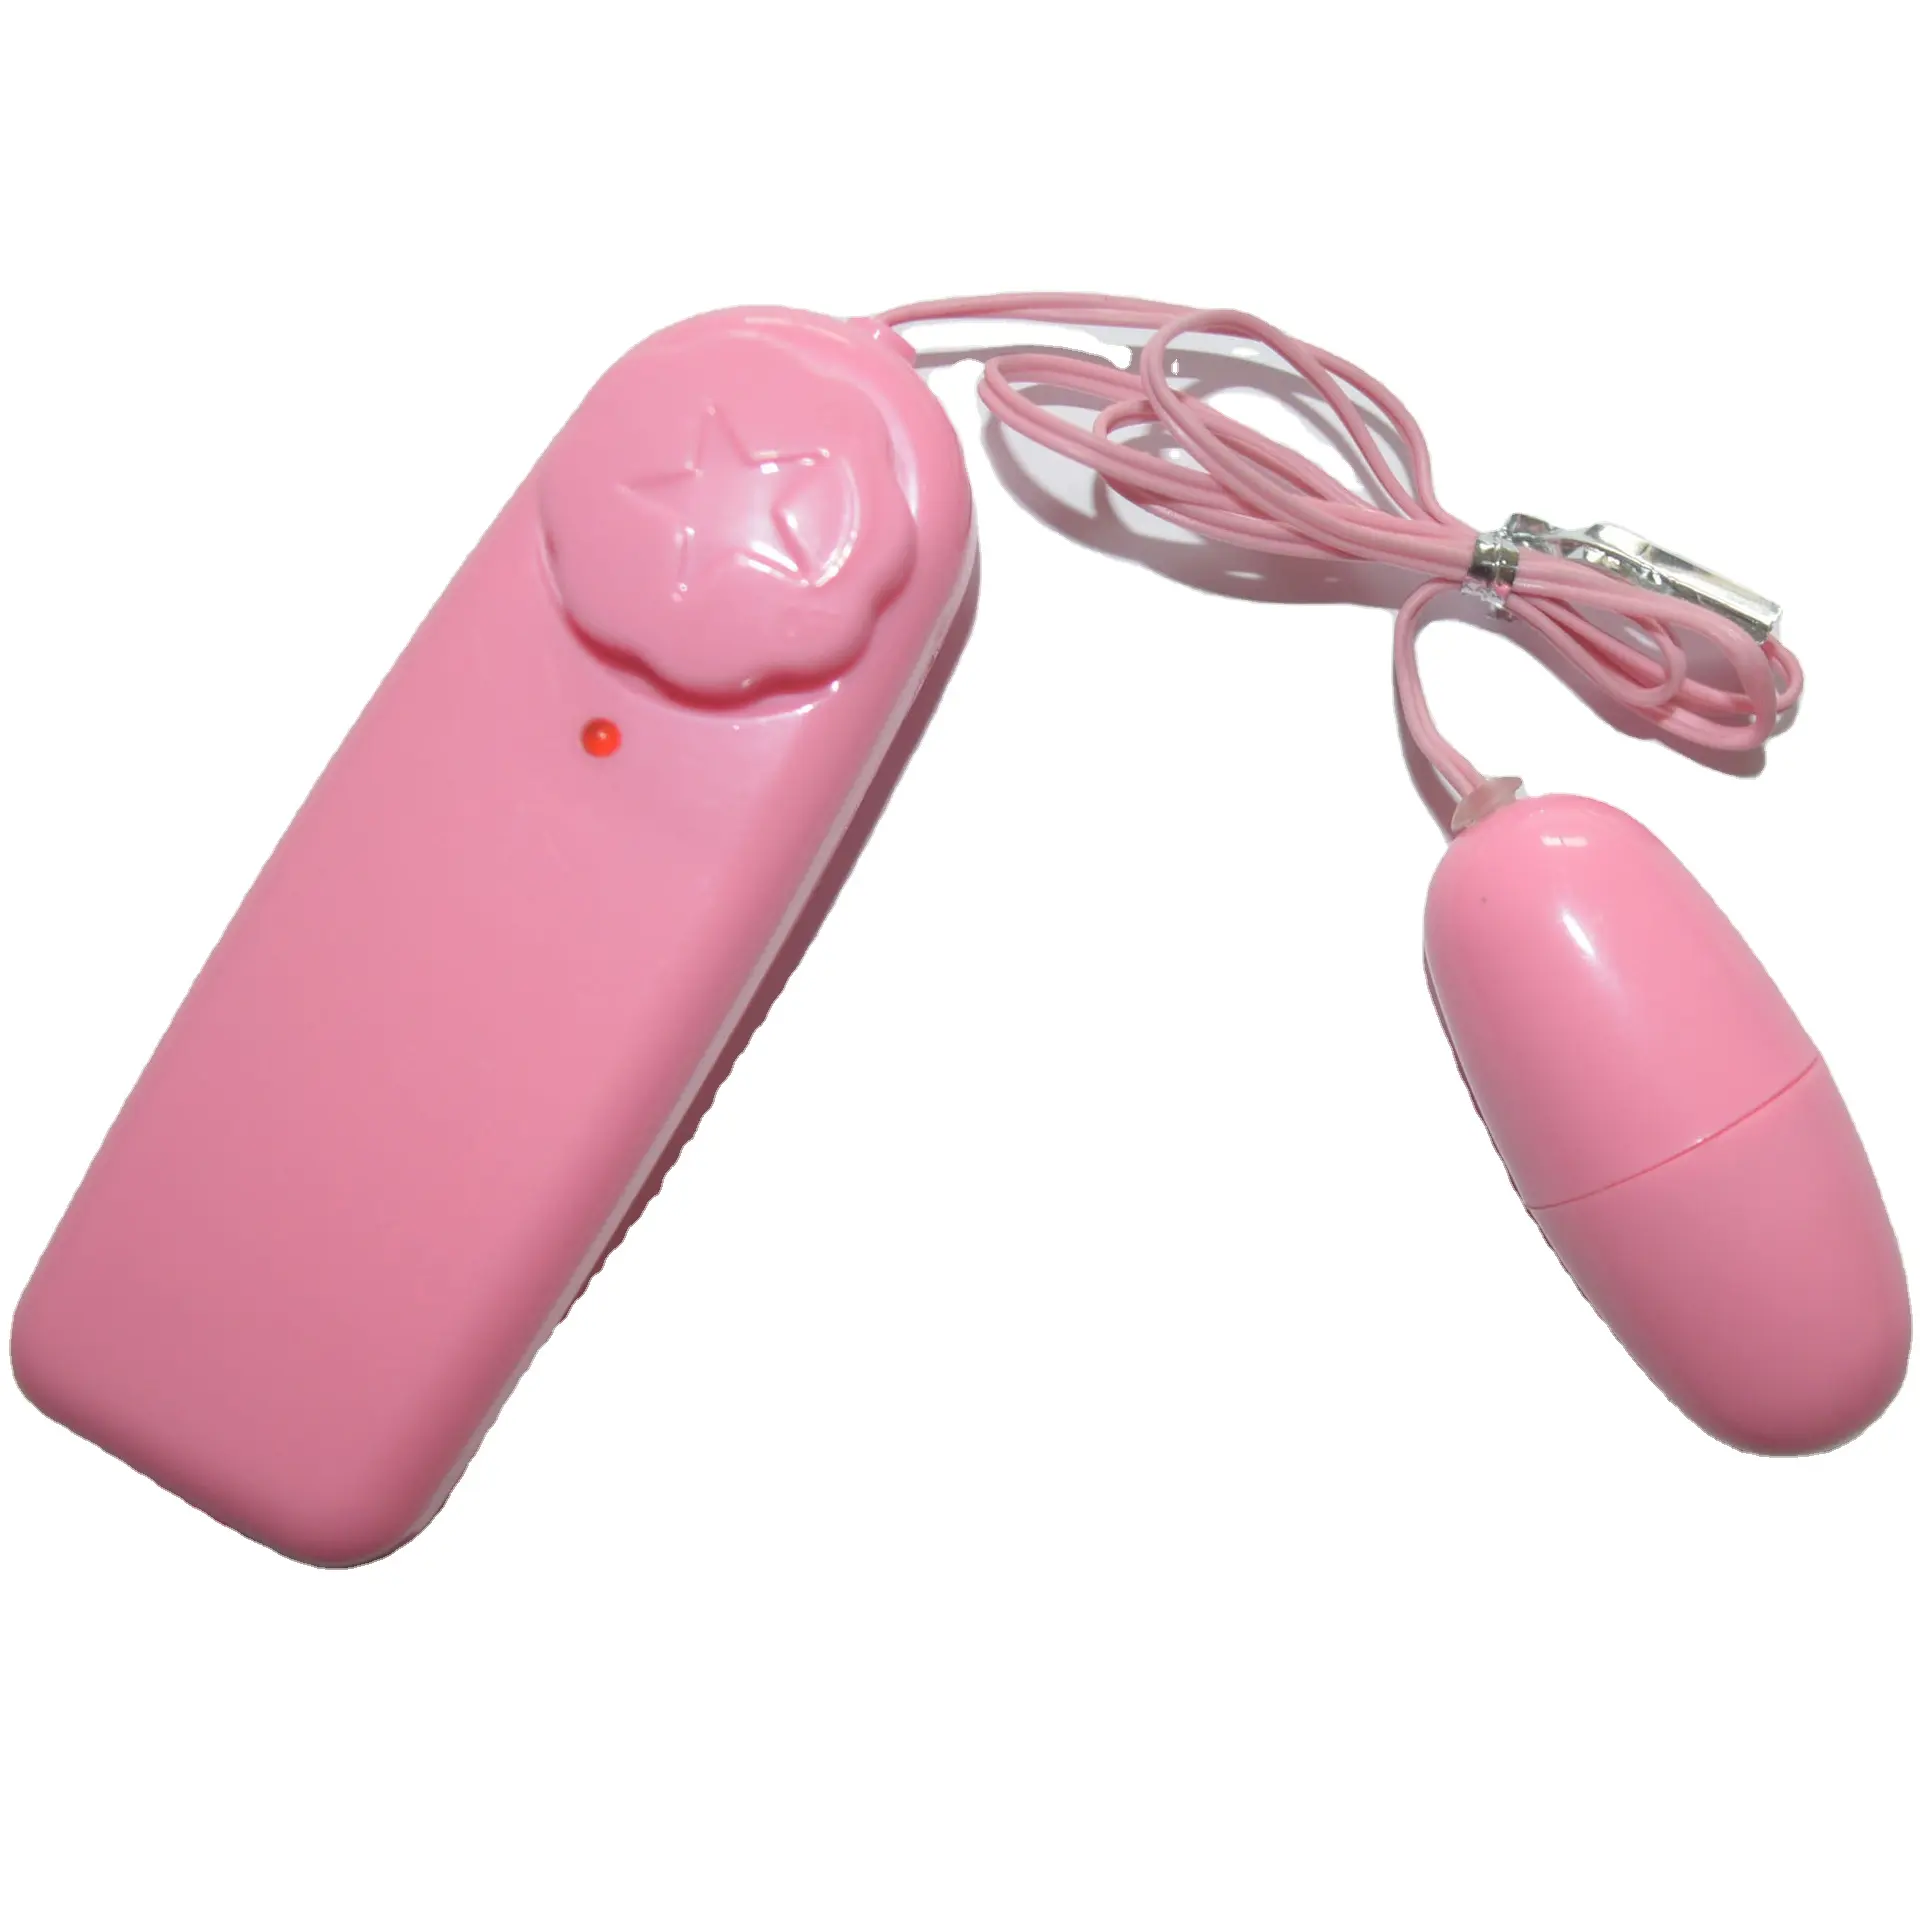 Sexo único salto ovo masturbação feminina equipamento G-spot vibração massagem vara adulto produtos sexuais atacado